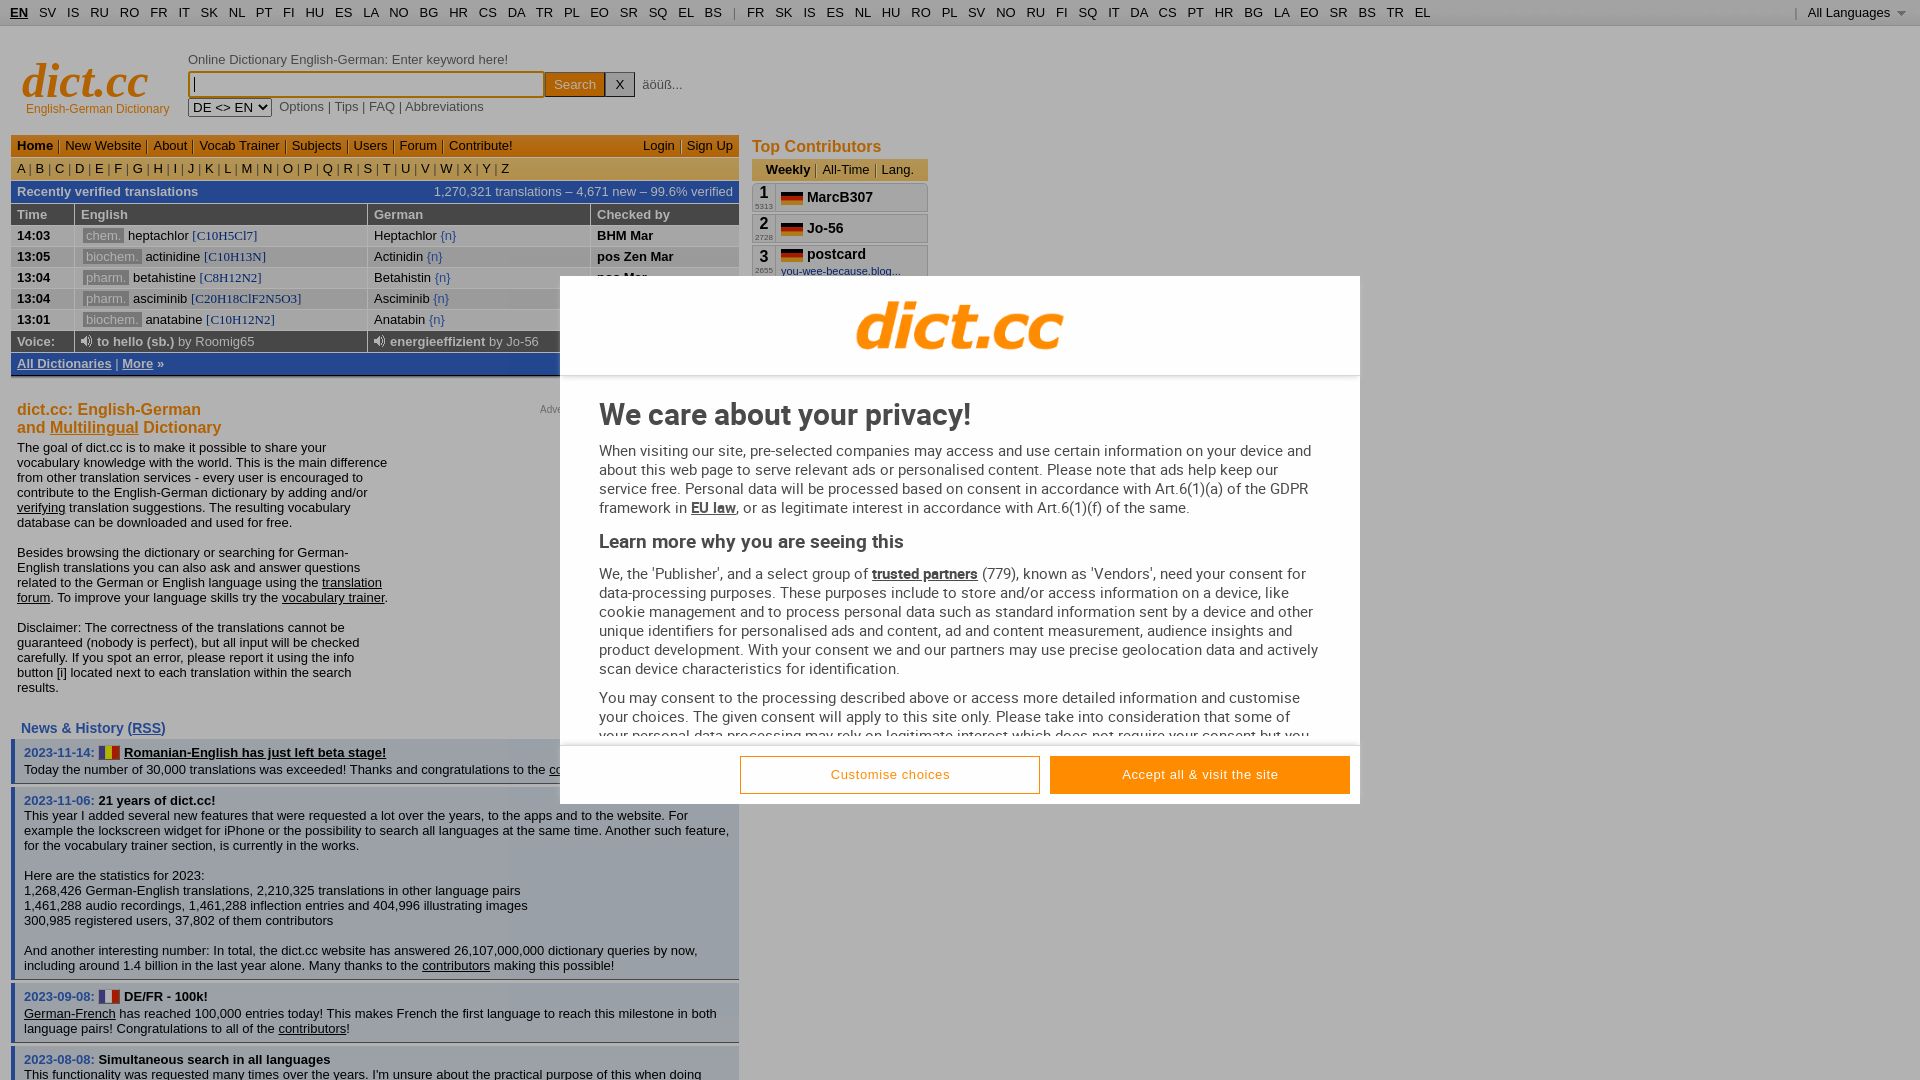 网站状态 dict.cc 是  在线的